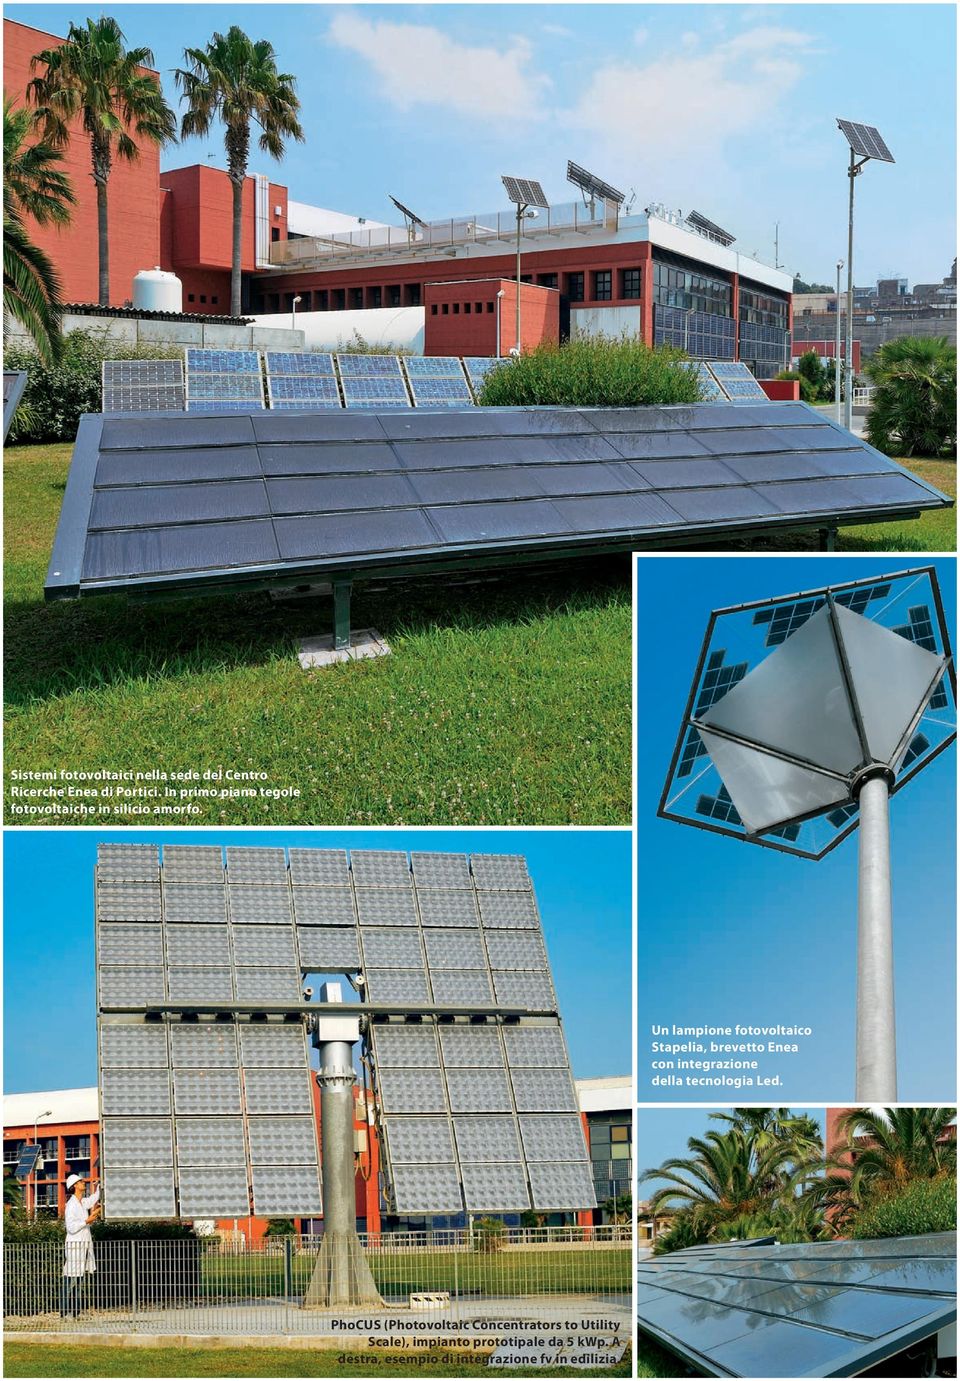 Un lampione fotovoltaico Stapelia, brevetto Enea con integrazione della tecnologia Led.